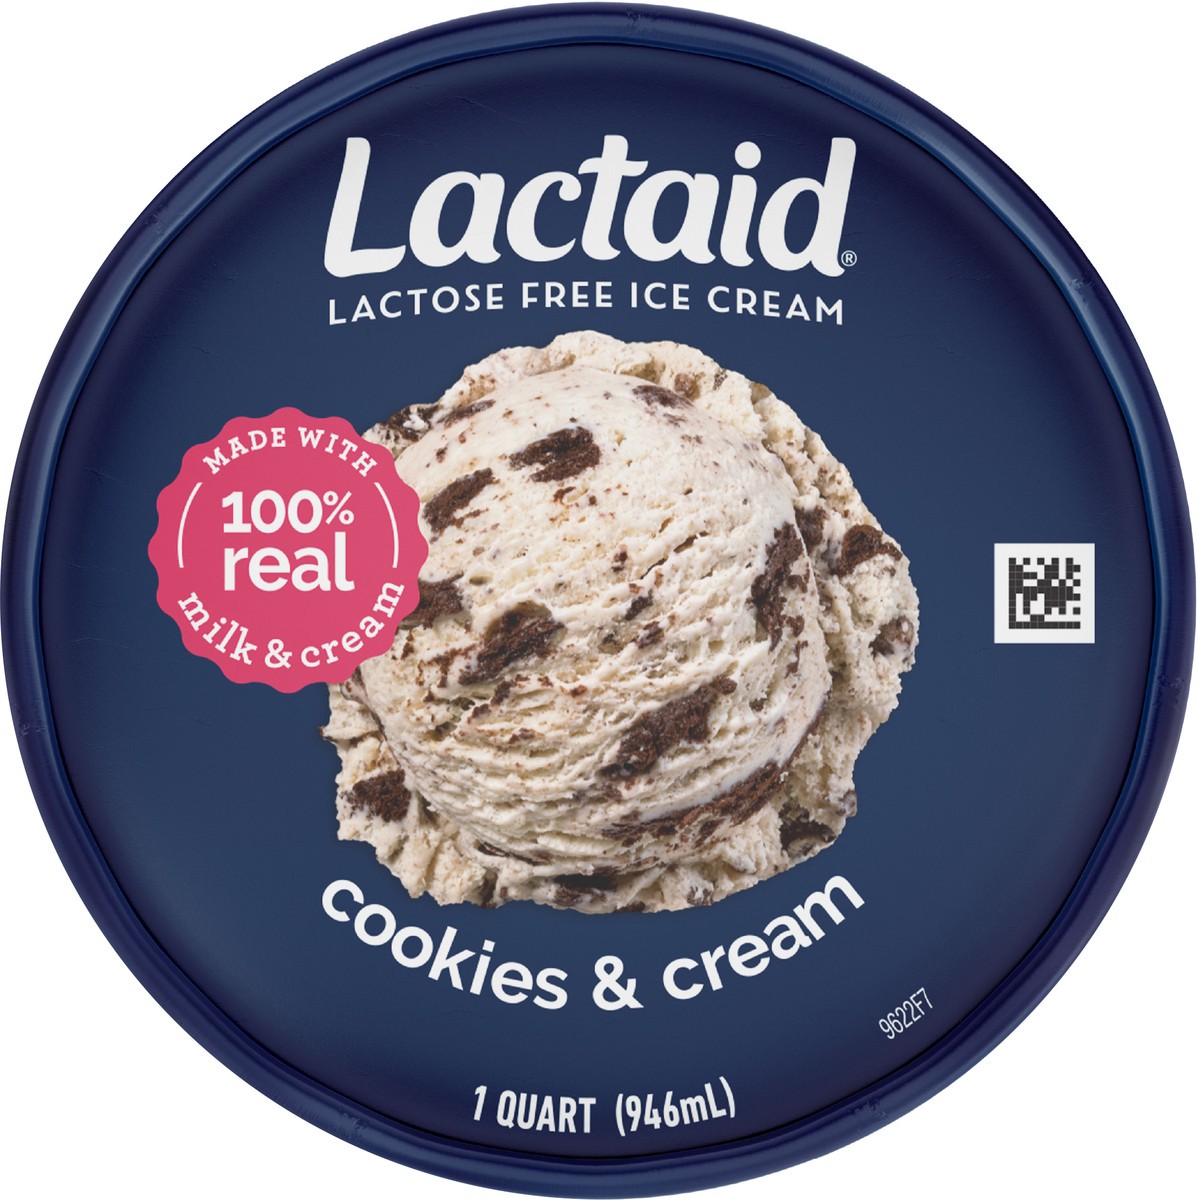 slide 9 of 9, Lactaid Cookies & Cream Ice Cream, 1 Quart, 